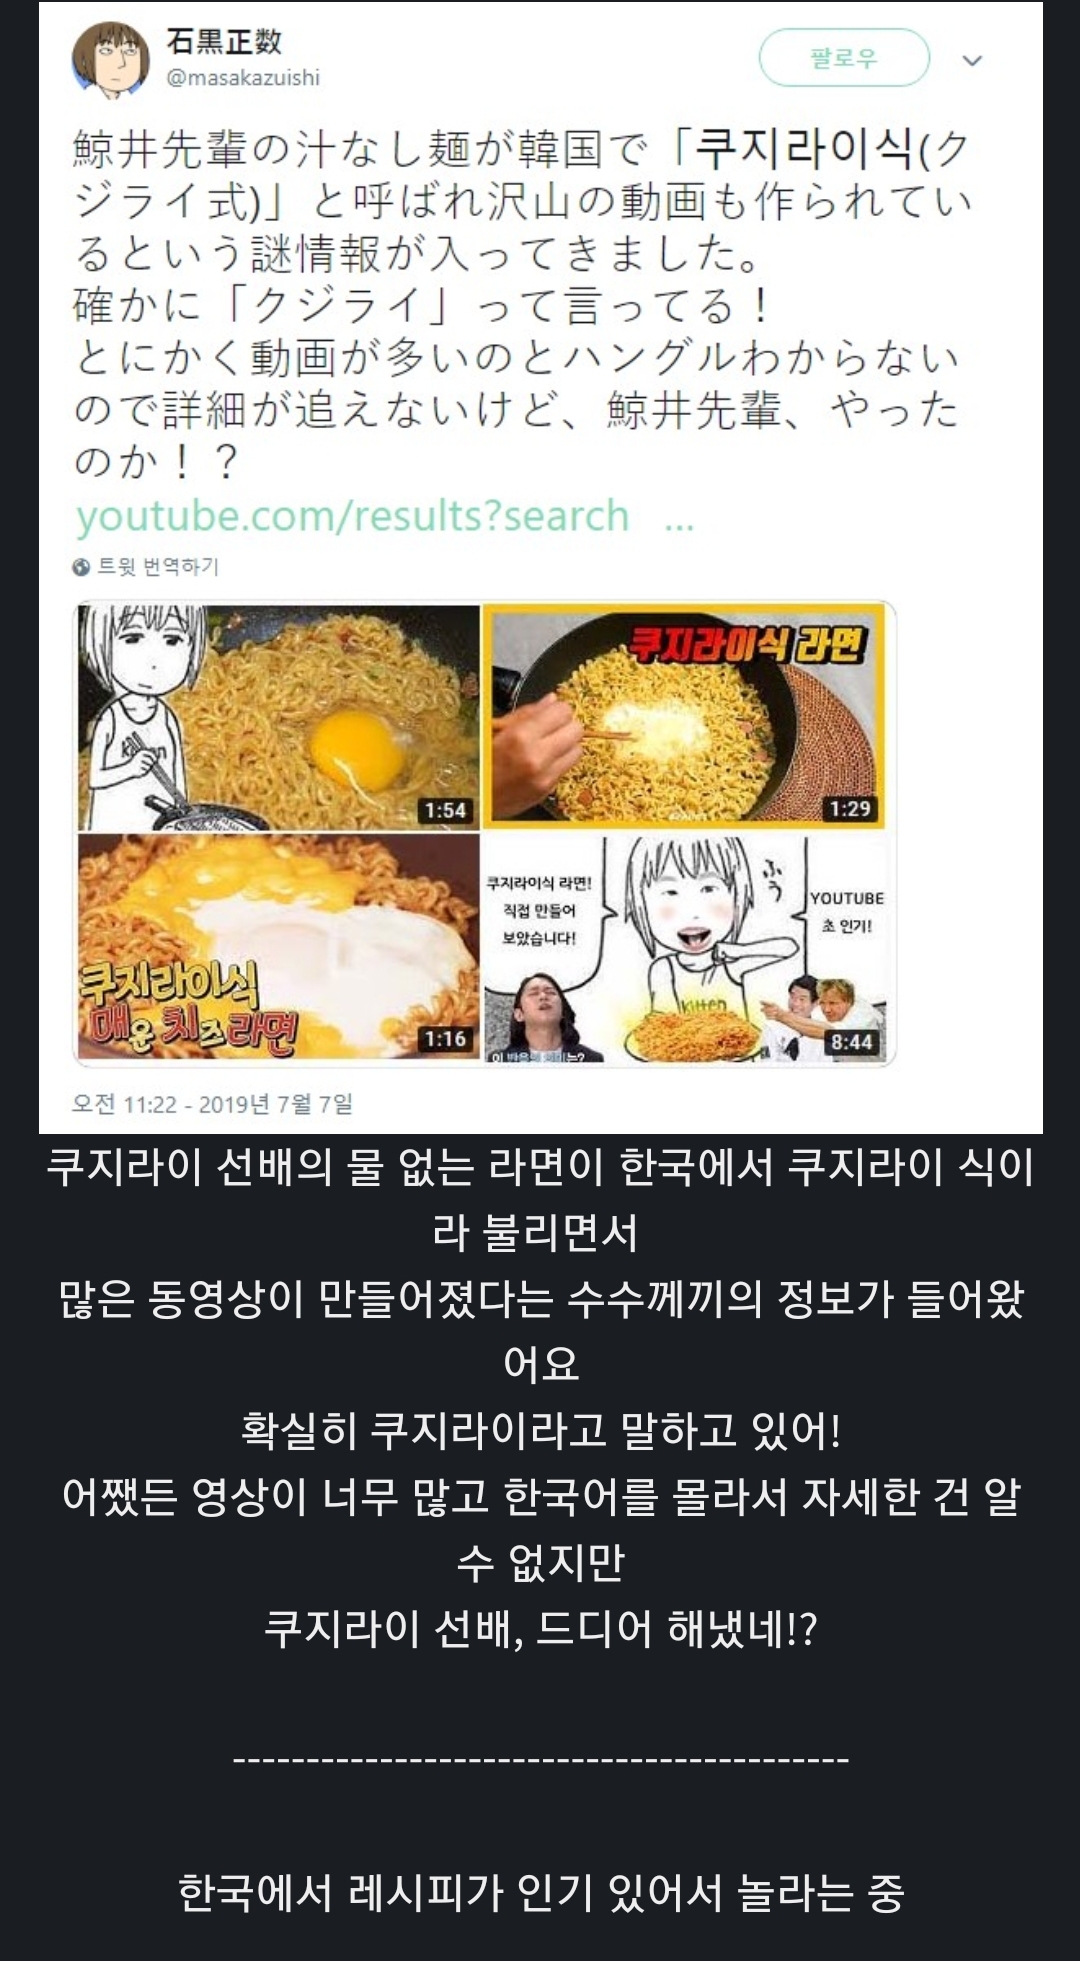 韓国でラーメンのレシピで有名な日本の漫画家